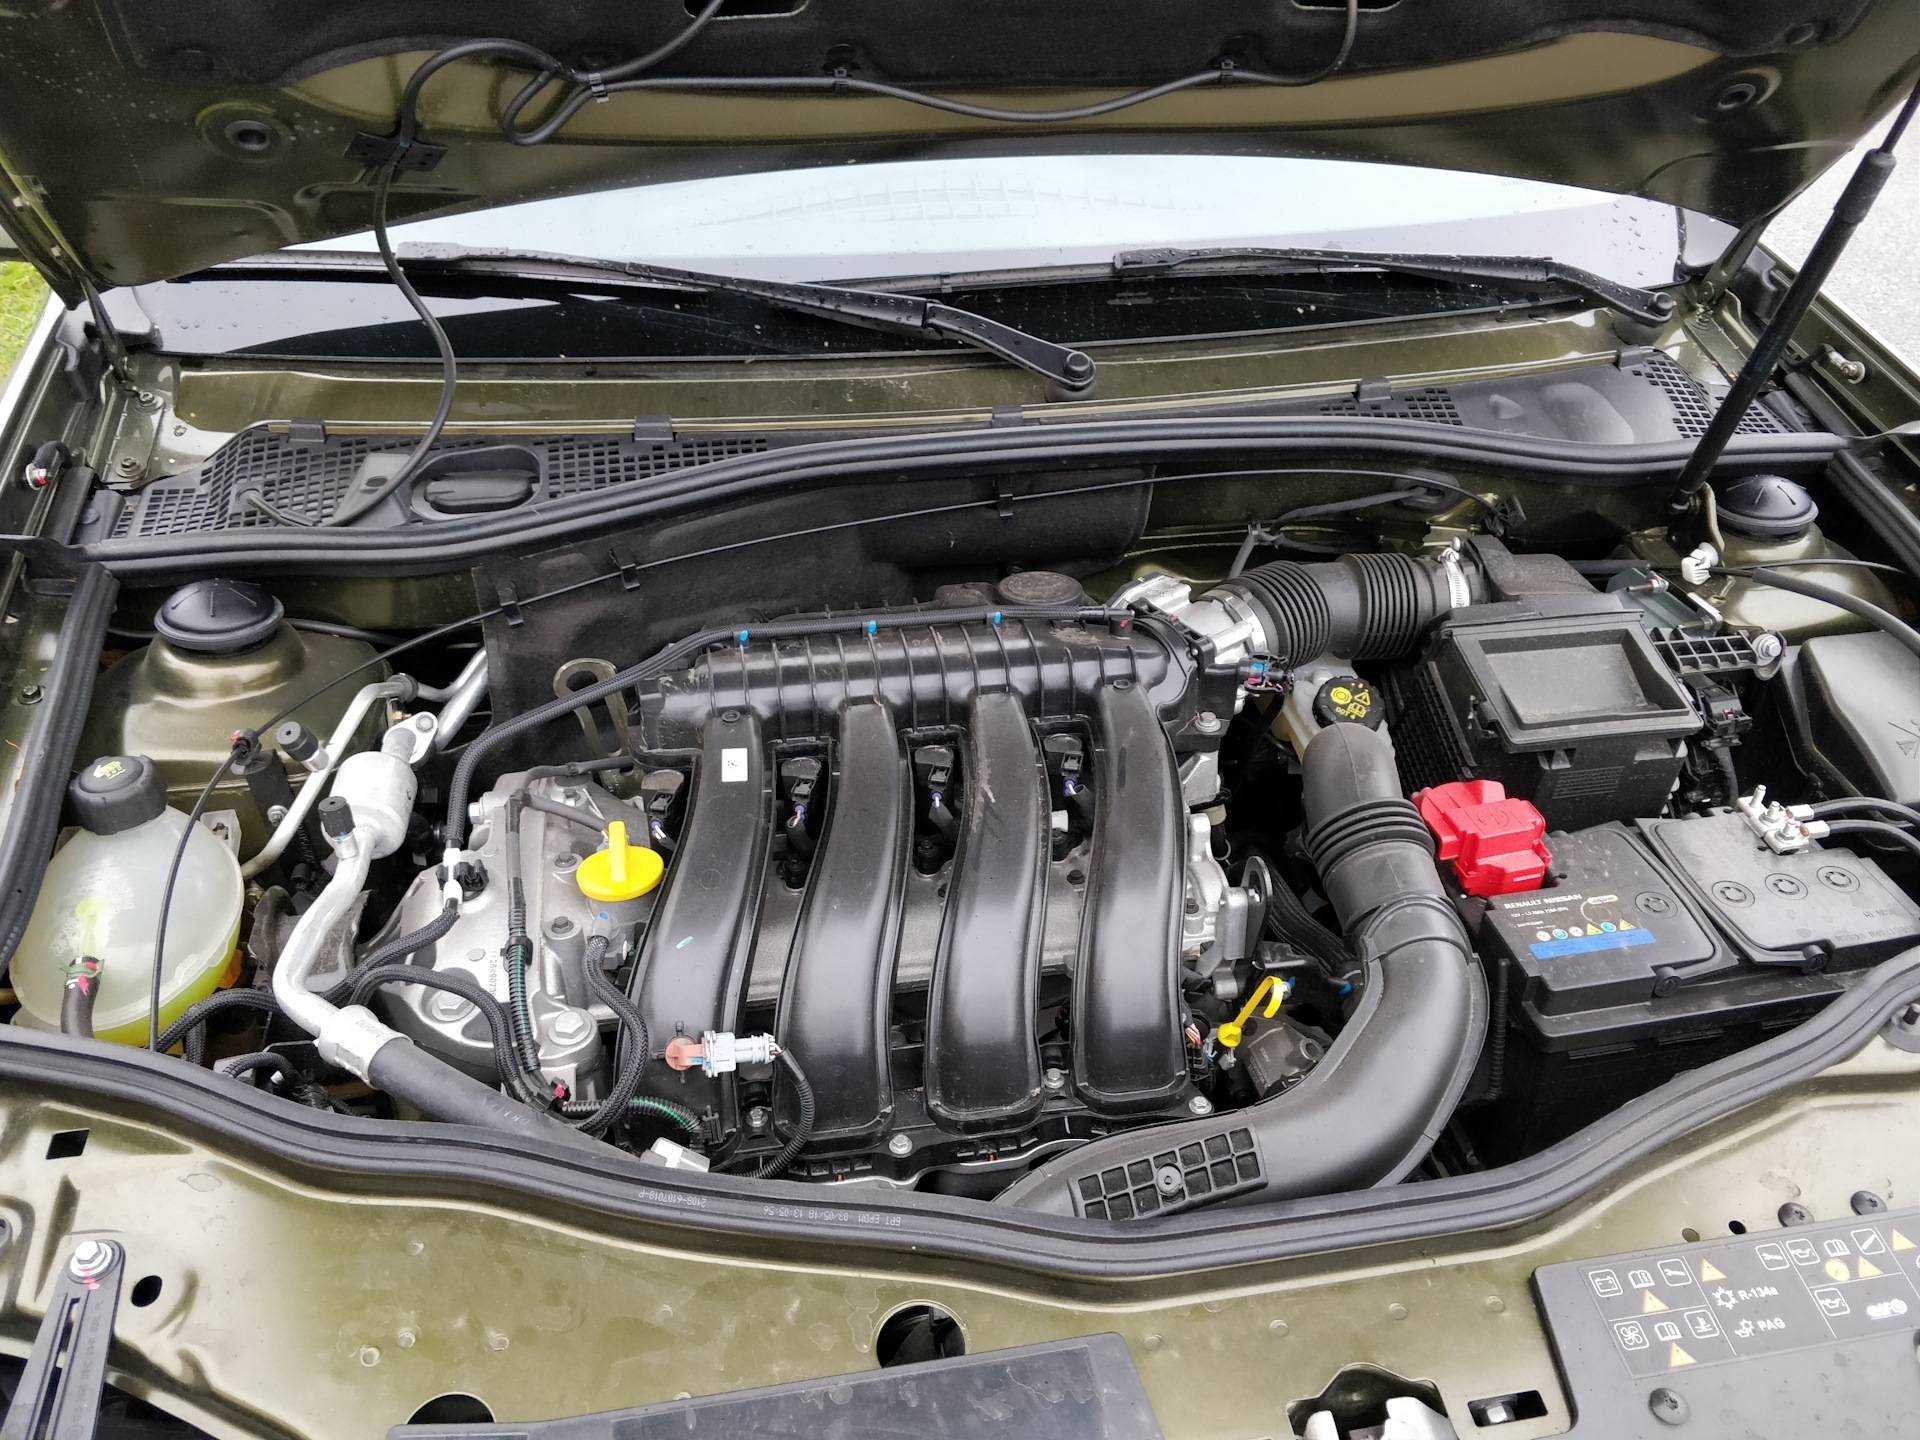 Рено дастер с двигателем 2.0 л. Двигатель Renault Duster 2.0 f4r. Рено Дастер 2.0 моторный отсек. F4r двигатель Дастер. Моторный отсек Рено Дастер 1.6.